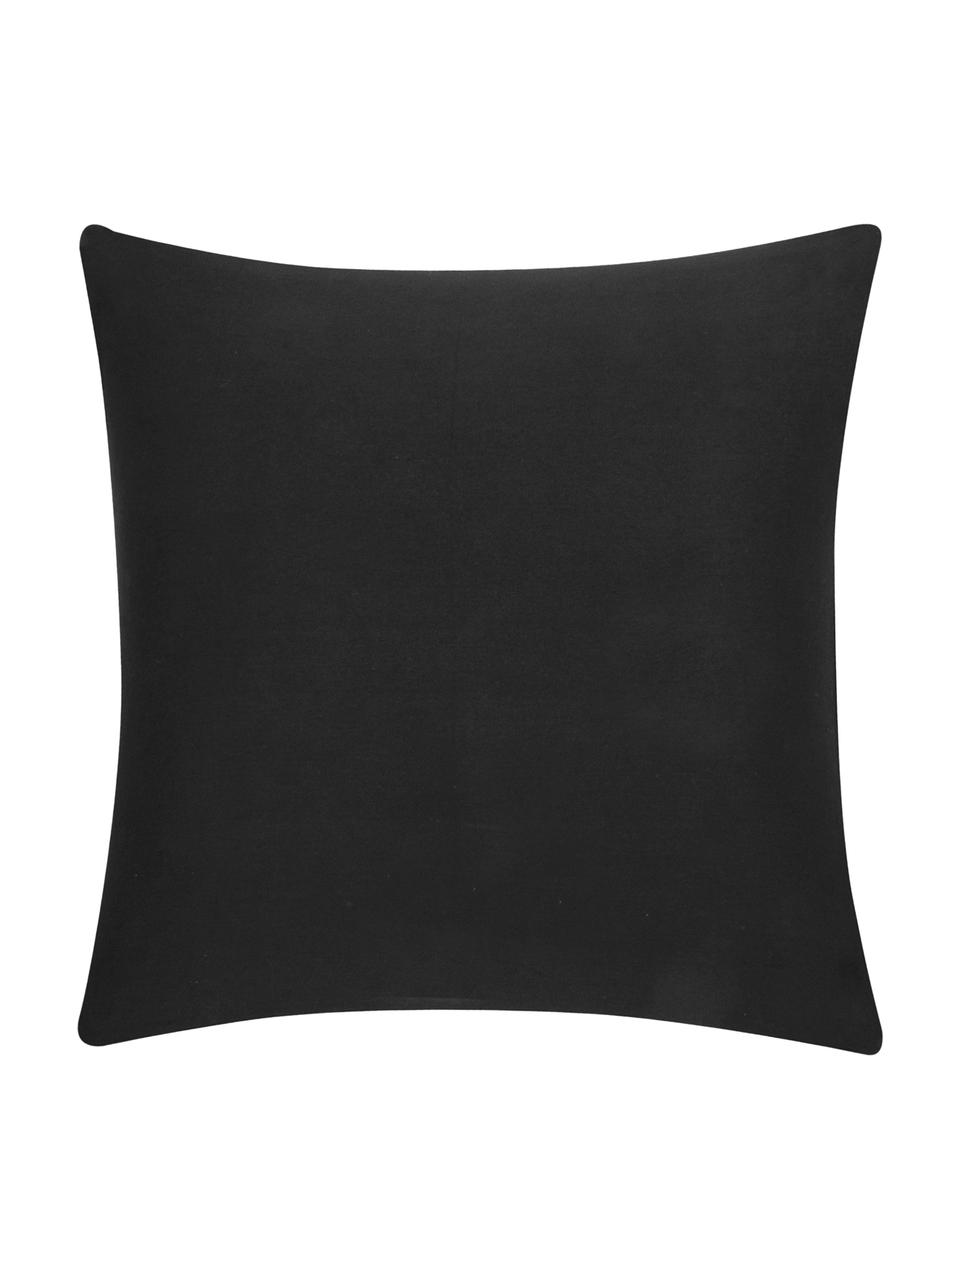 Poszewka na poduszkę Mads, 100% bawełna, Czarny, S 50 x D 50 cm